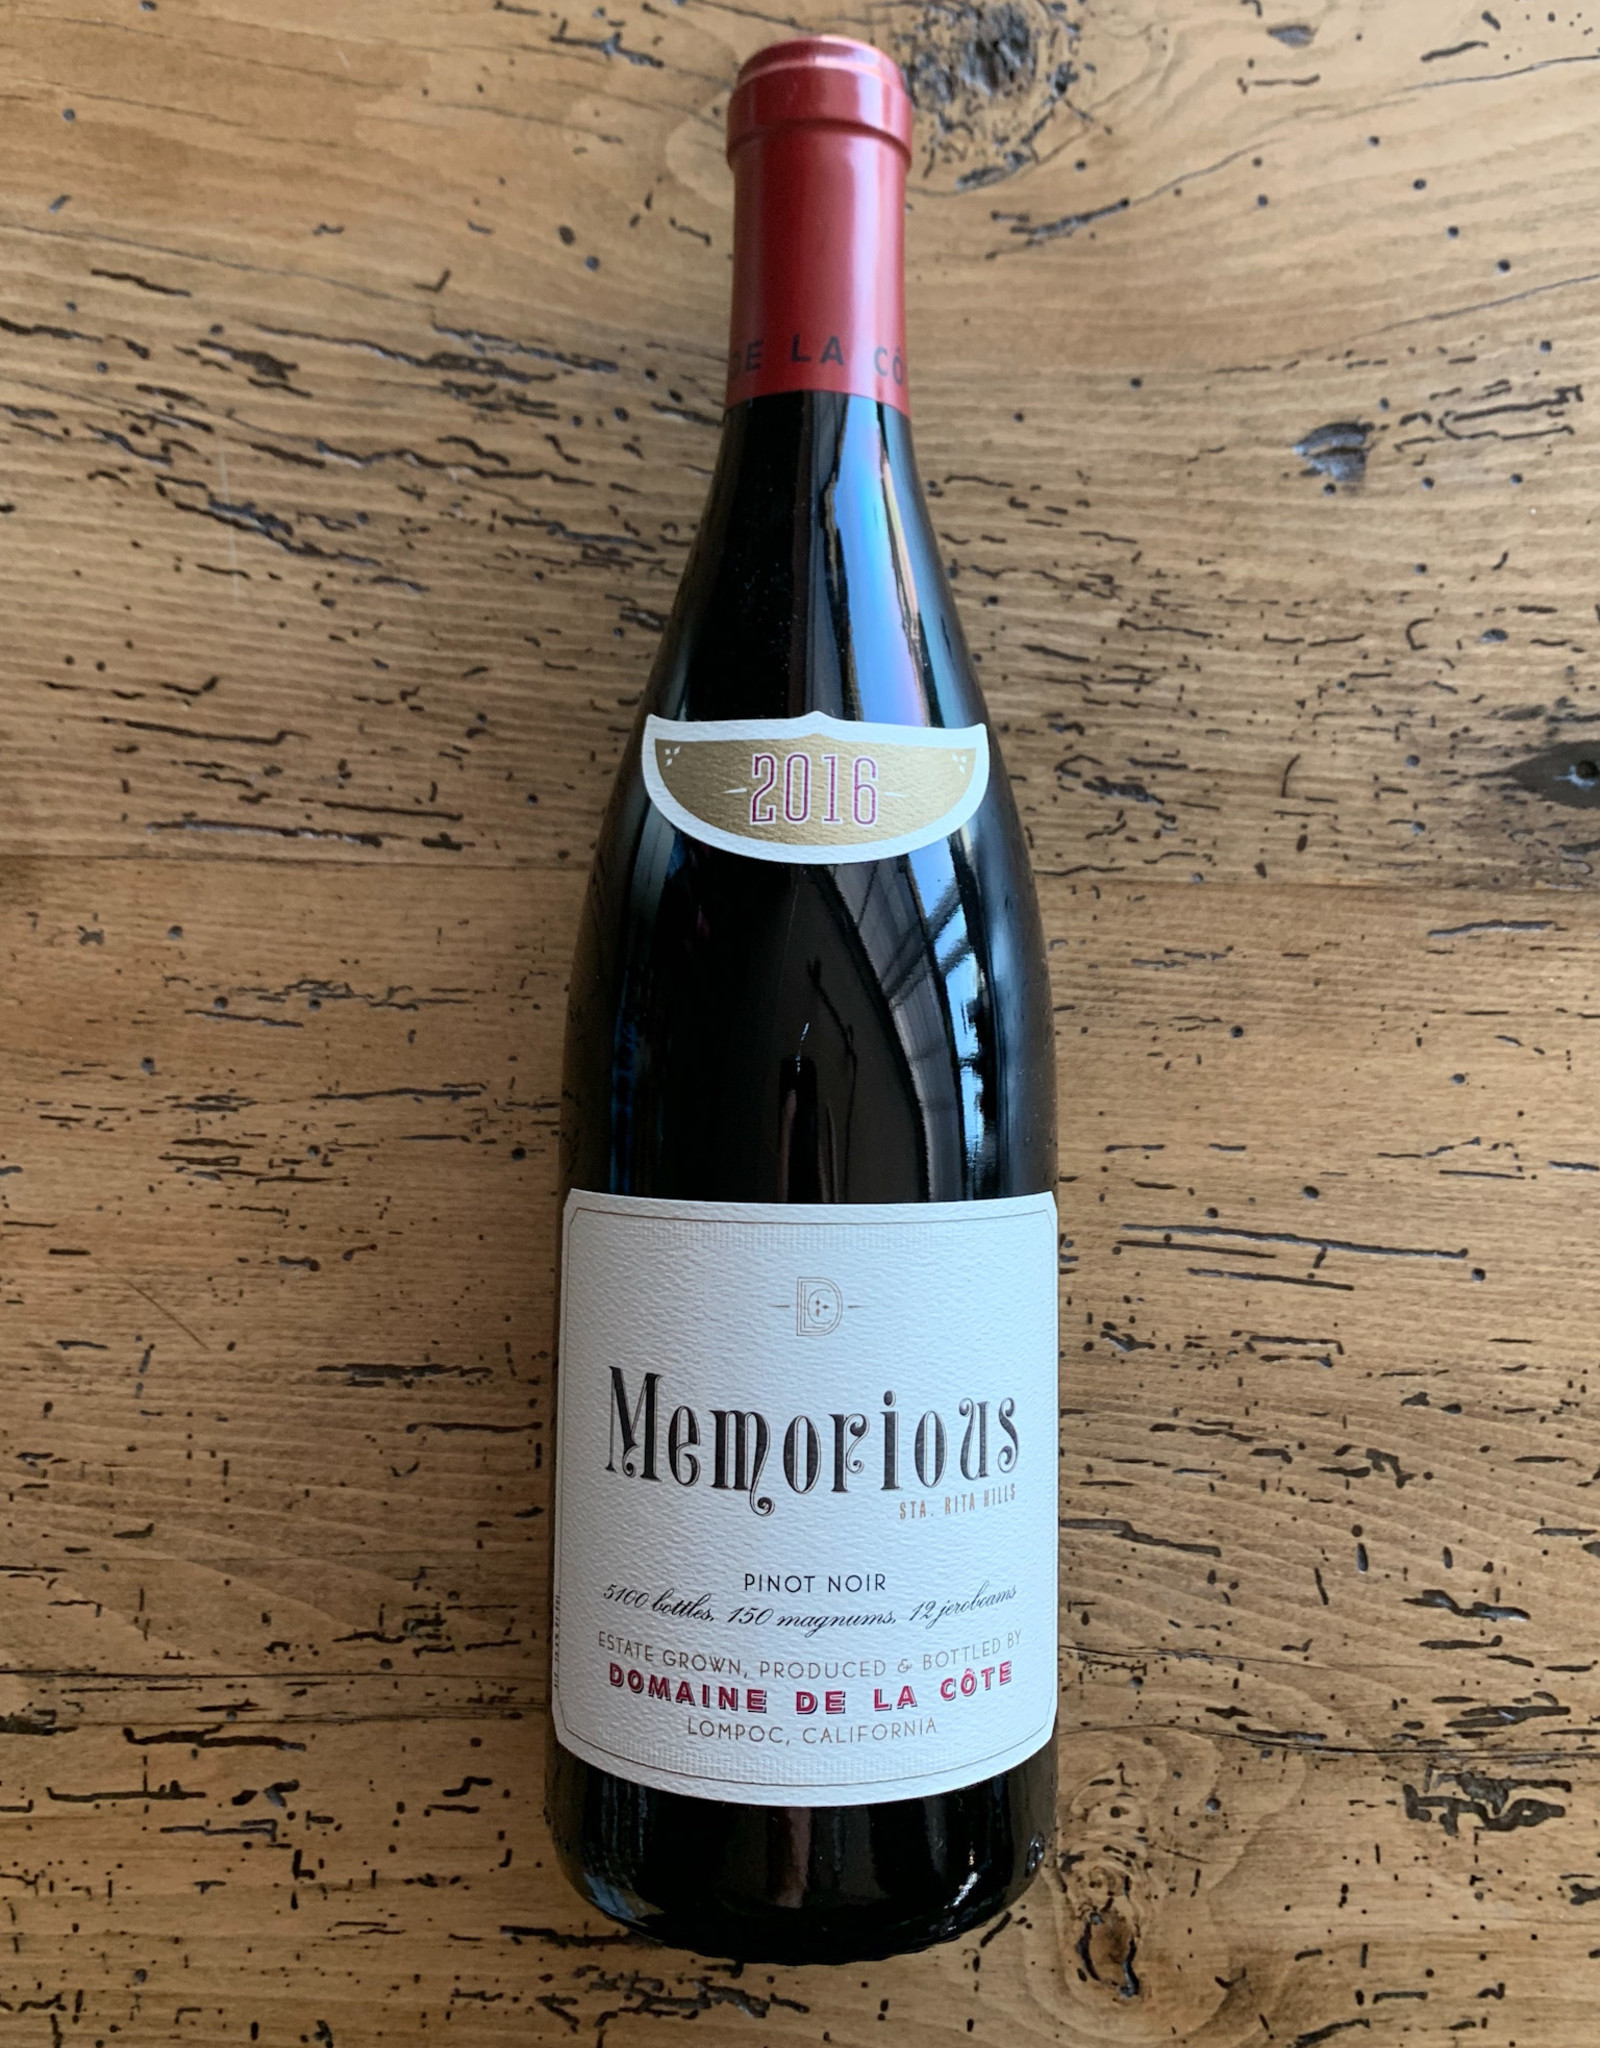 Domaine de la Cote Memorious Pinot Noir